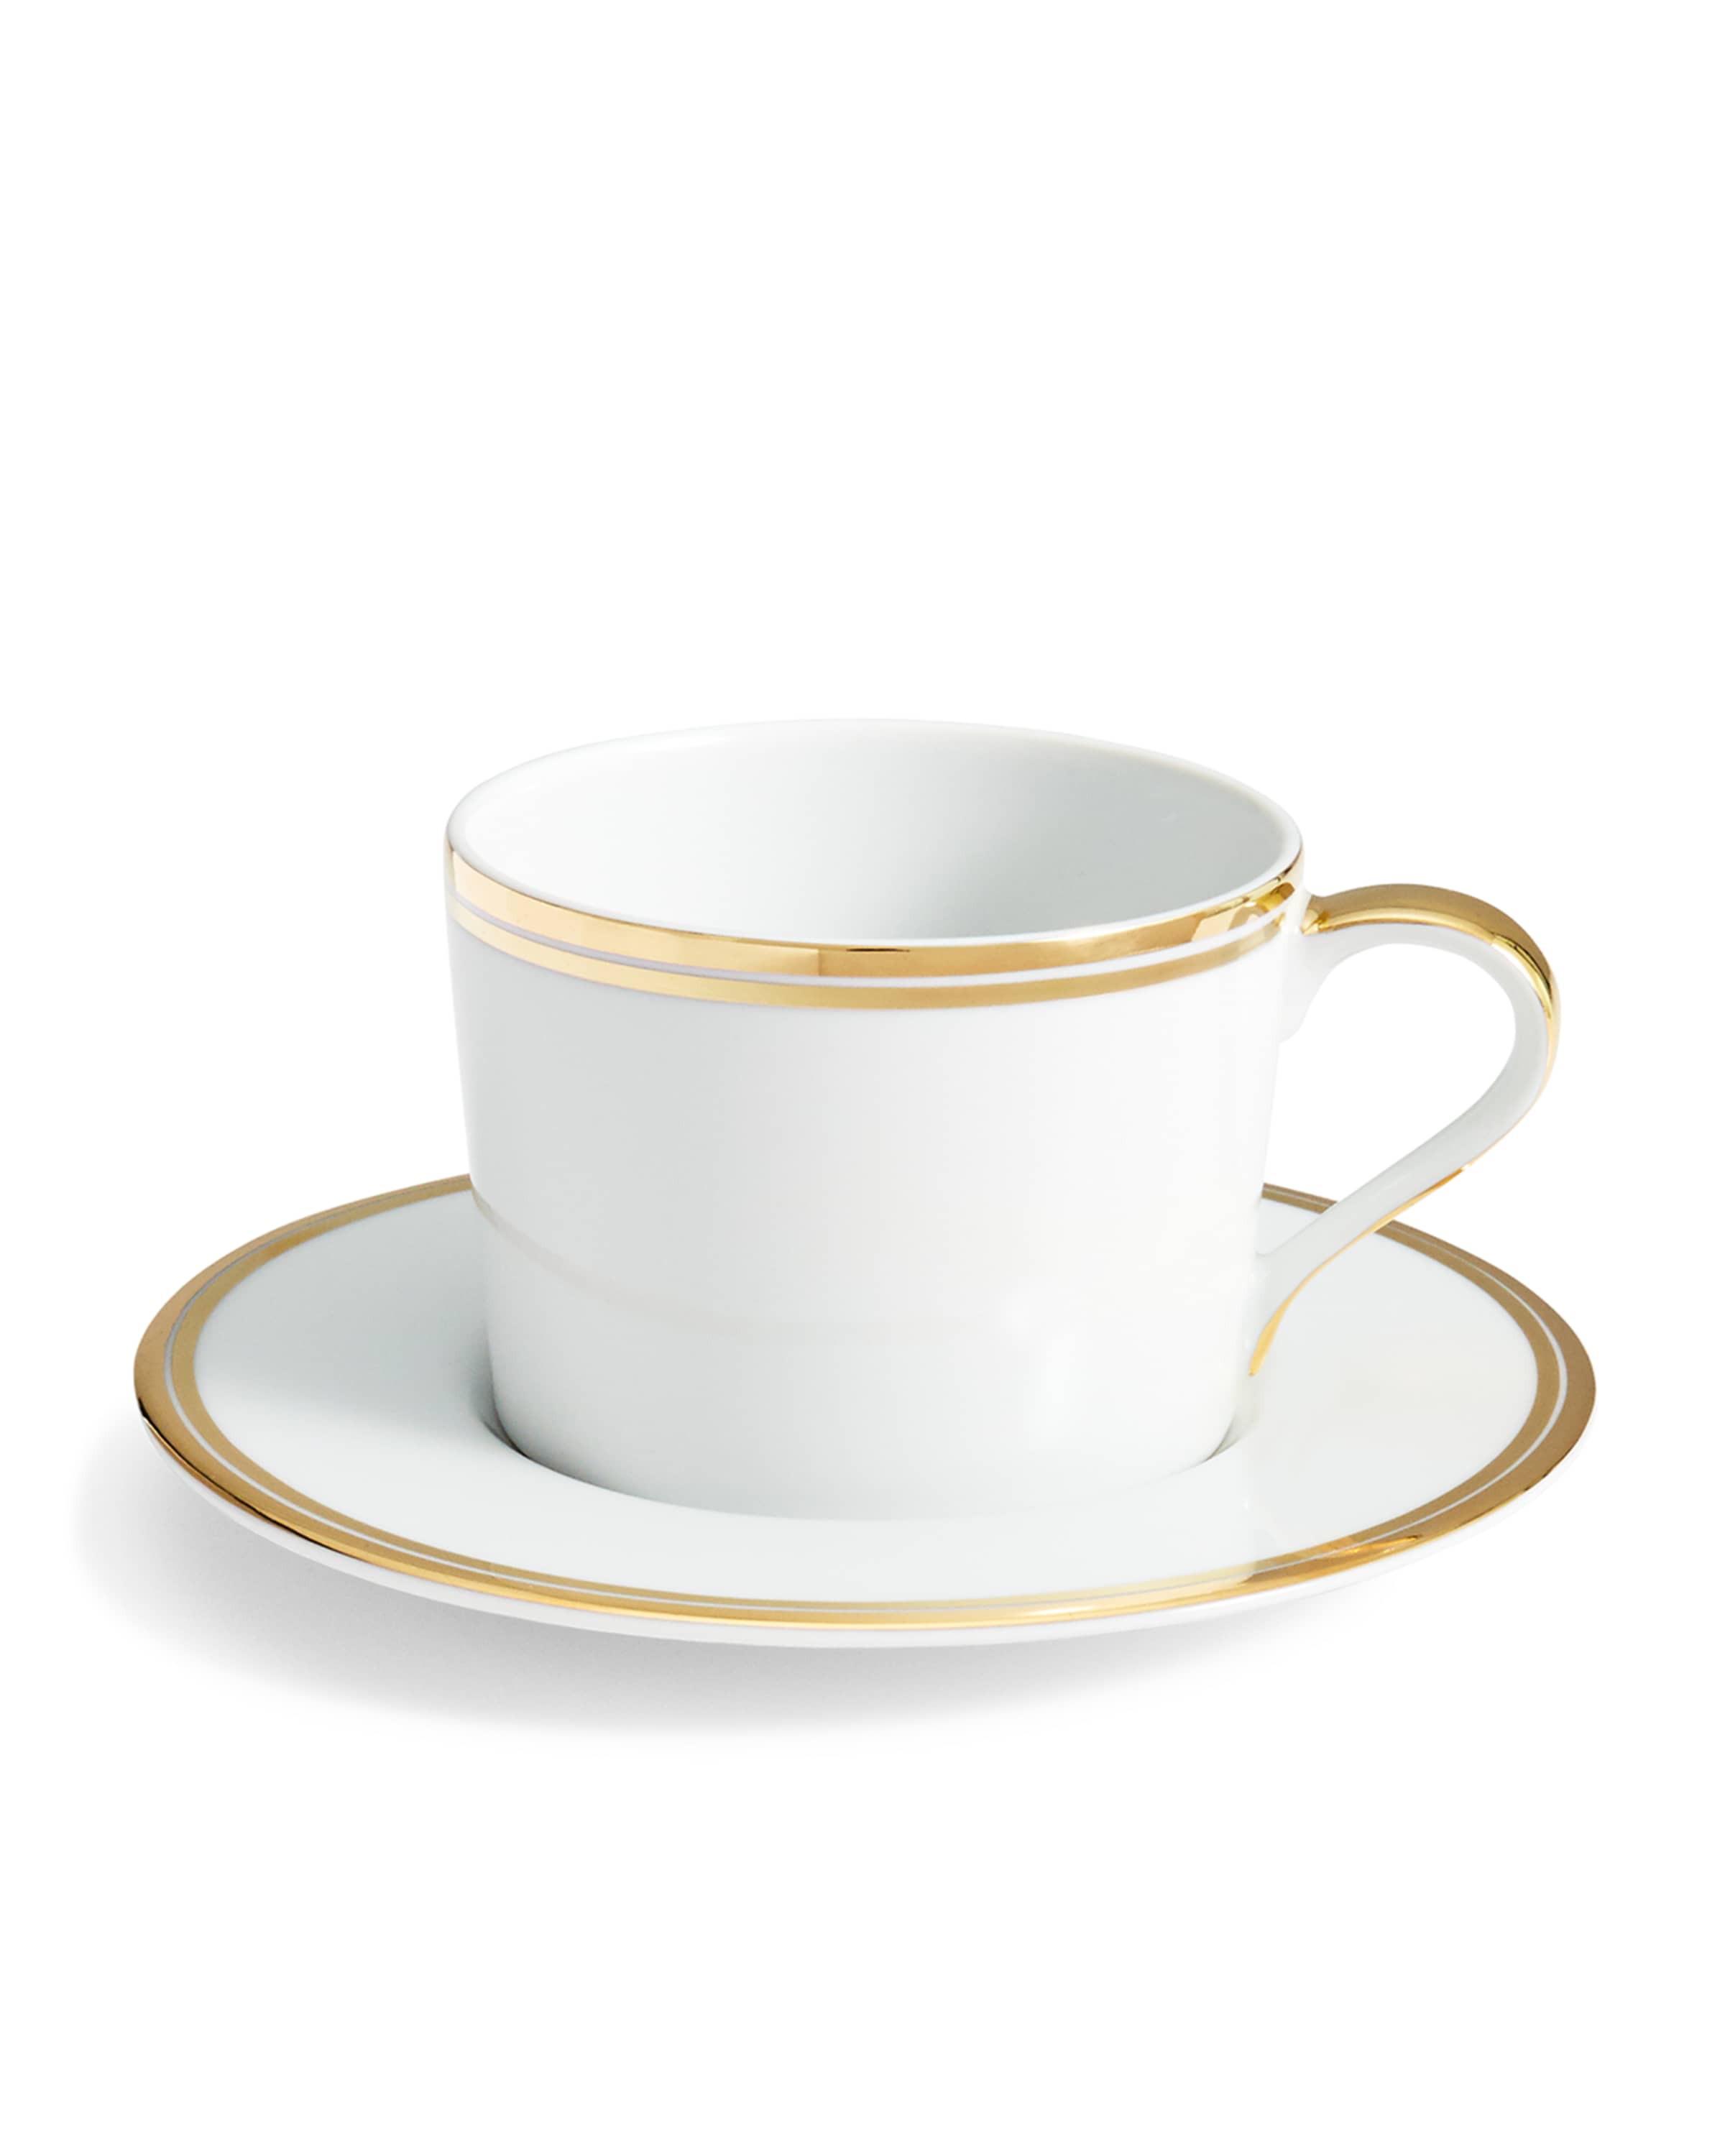 Ralph Lauren Home Wilshire Tea Cup and Saucer, Gold